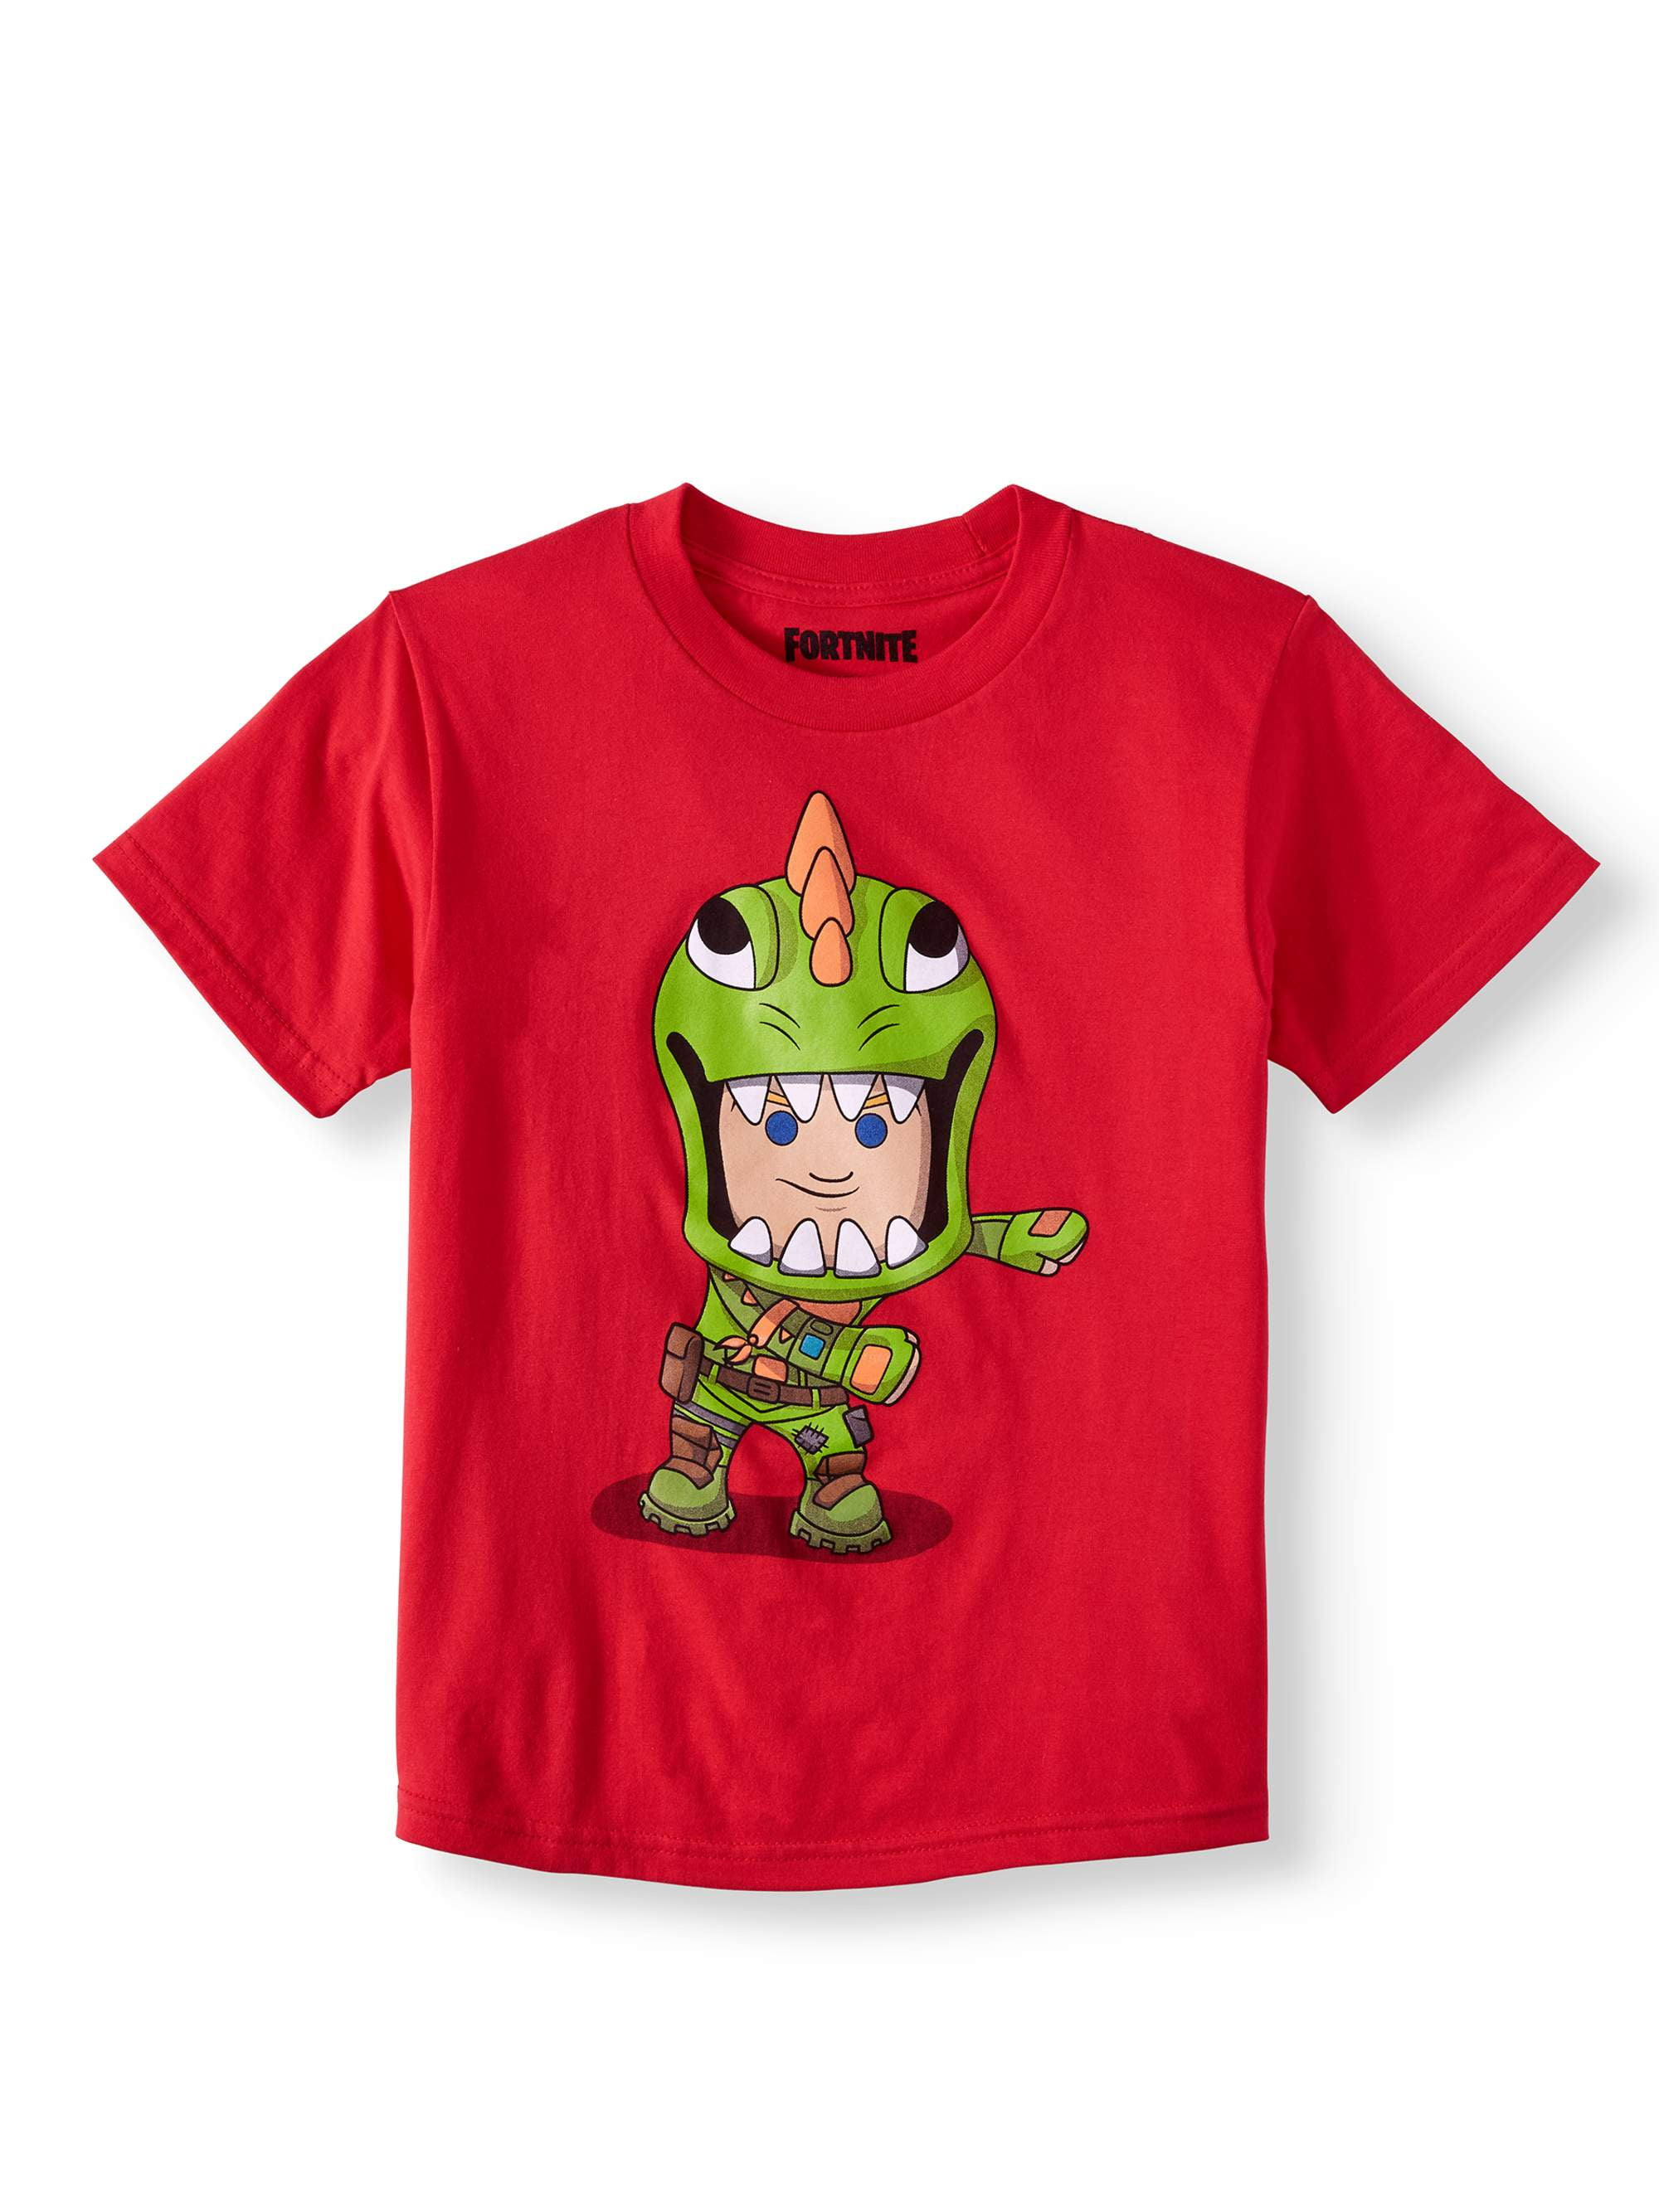 FortNite Shirts & Tops for Kids - Poshmark